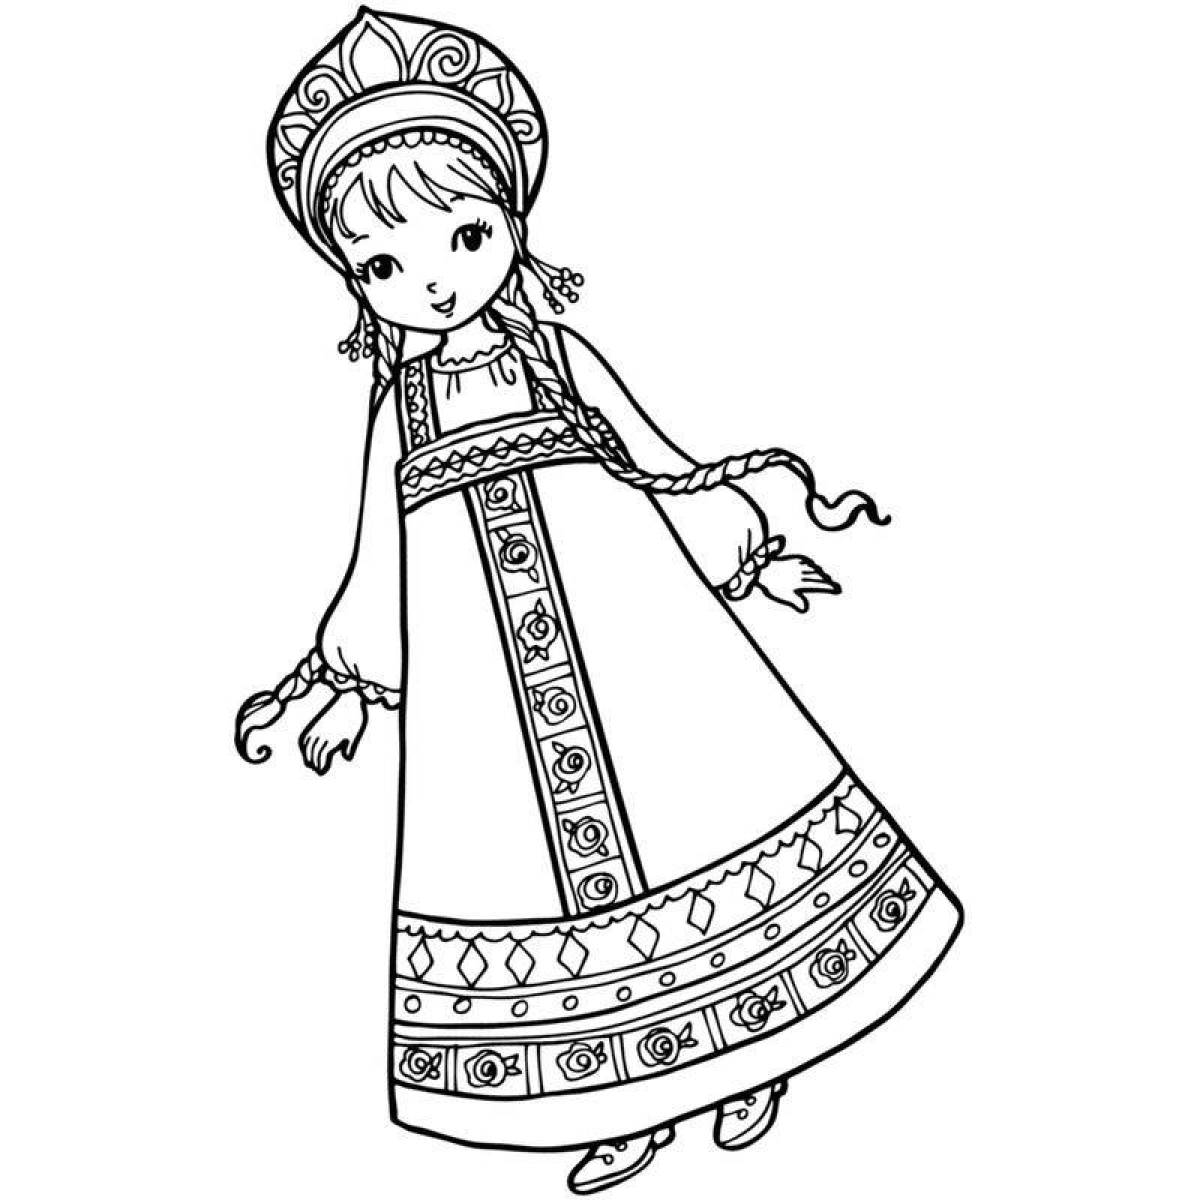 Русский народный костюм женский раскраска